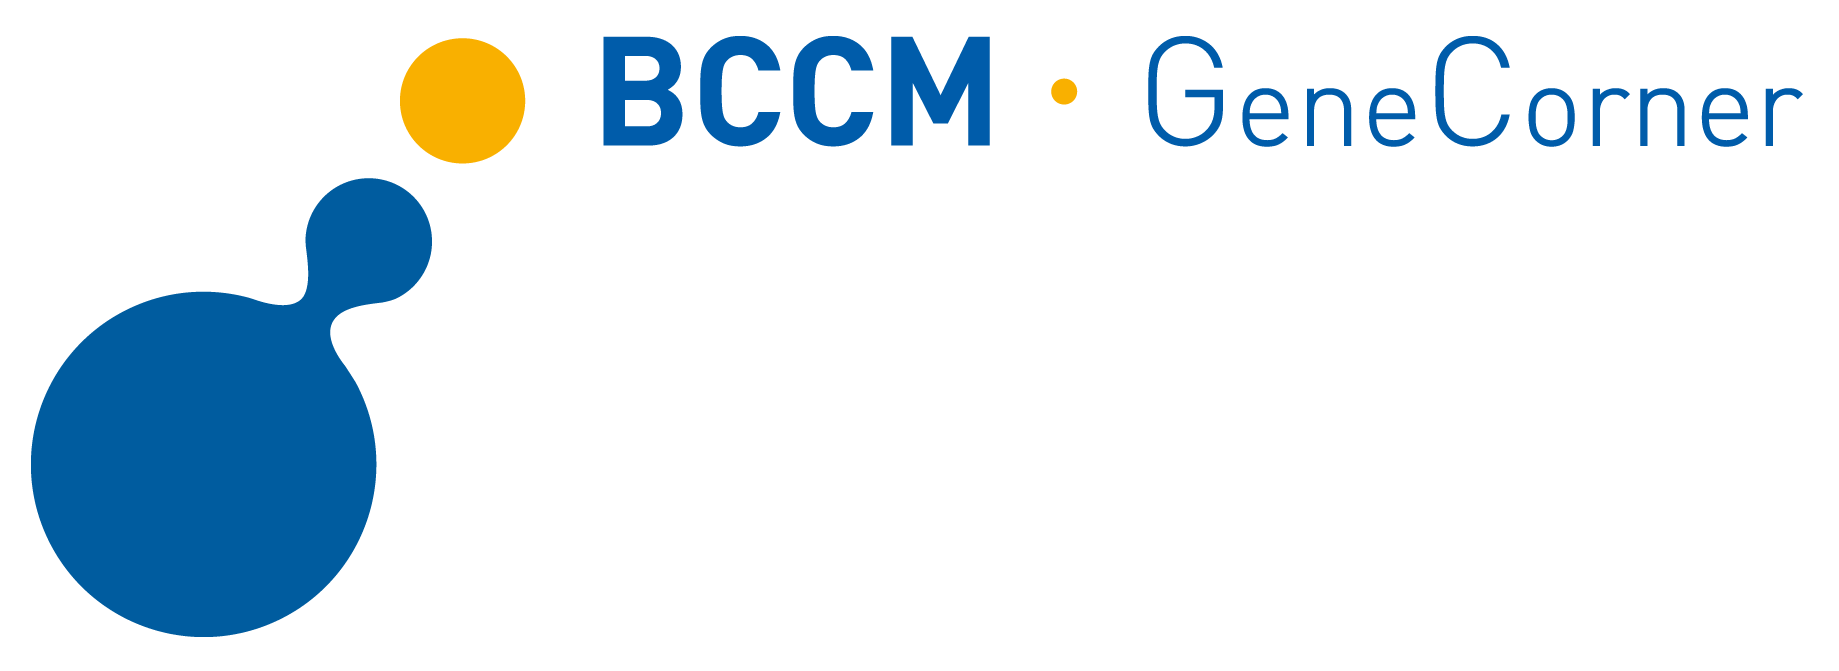 BCCM Gene Corner.png